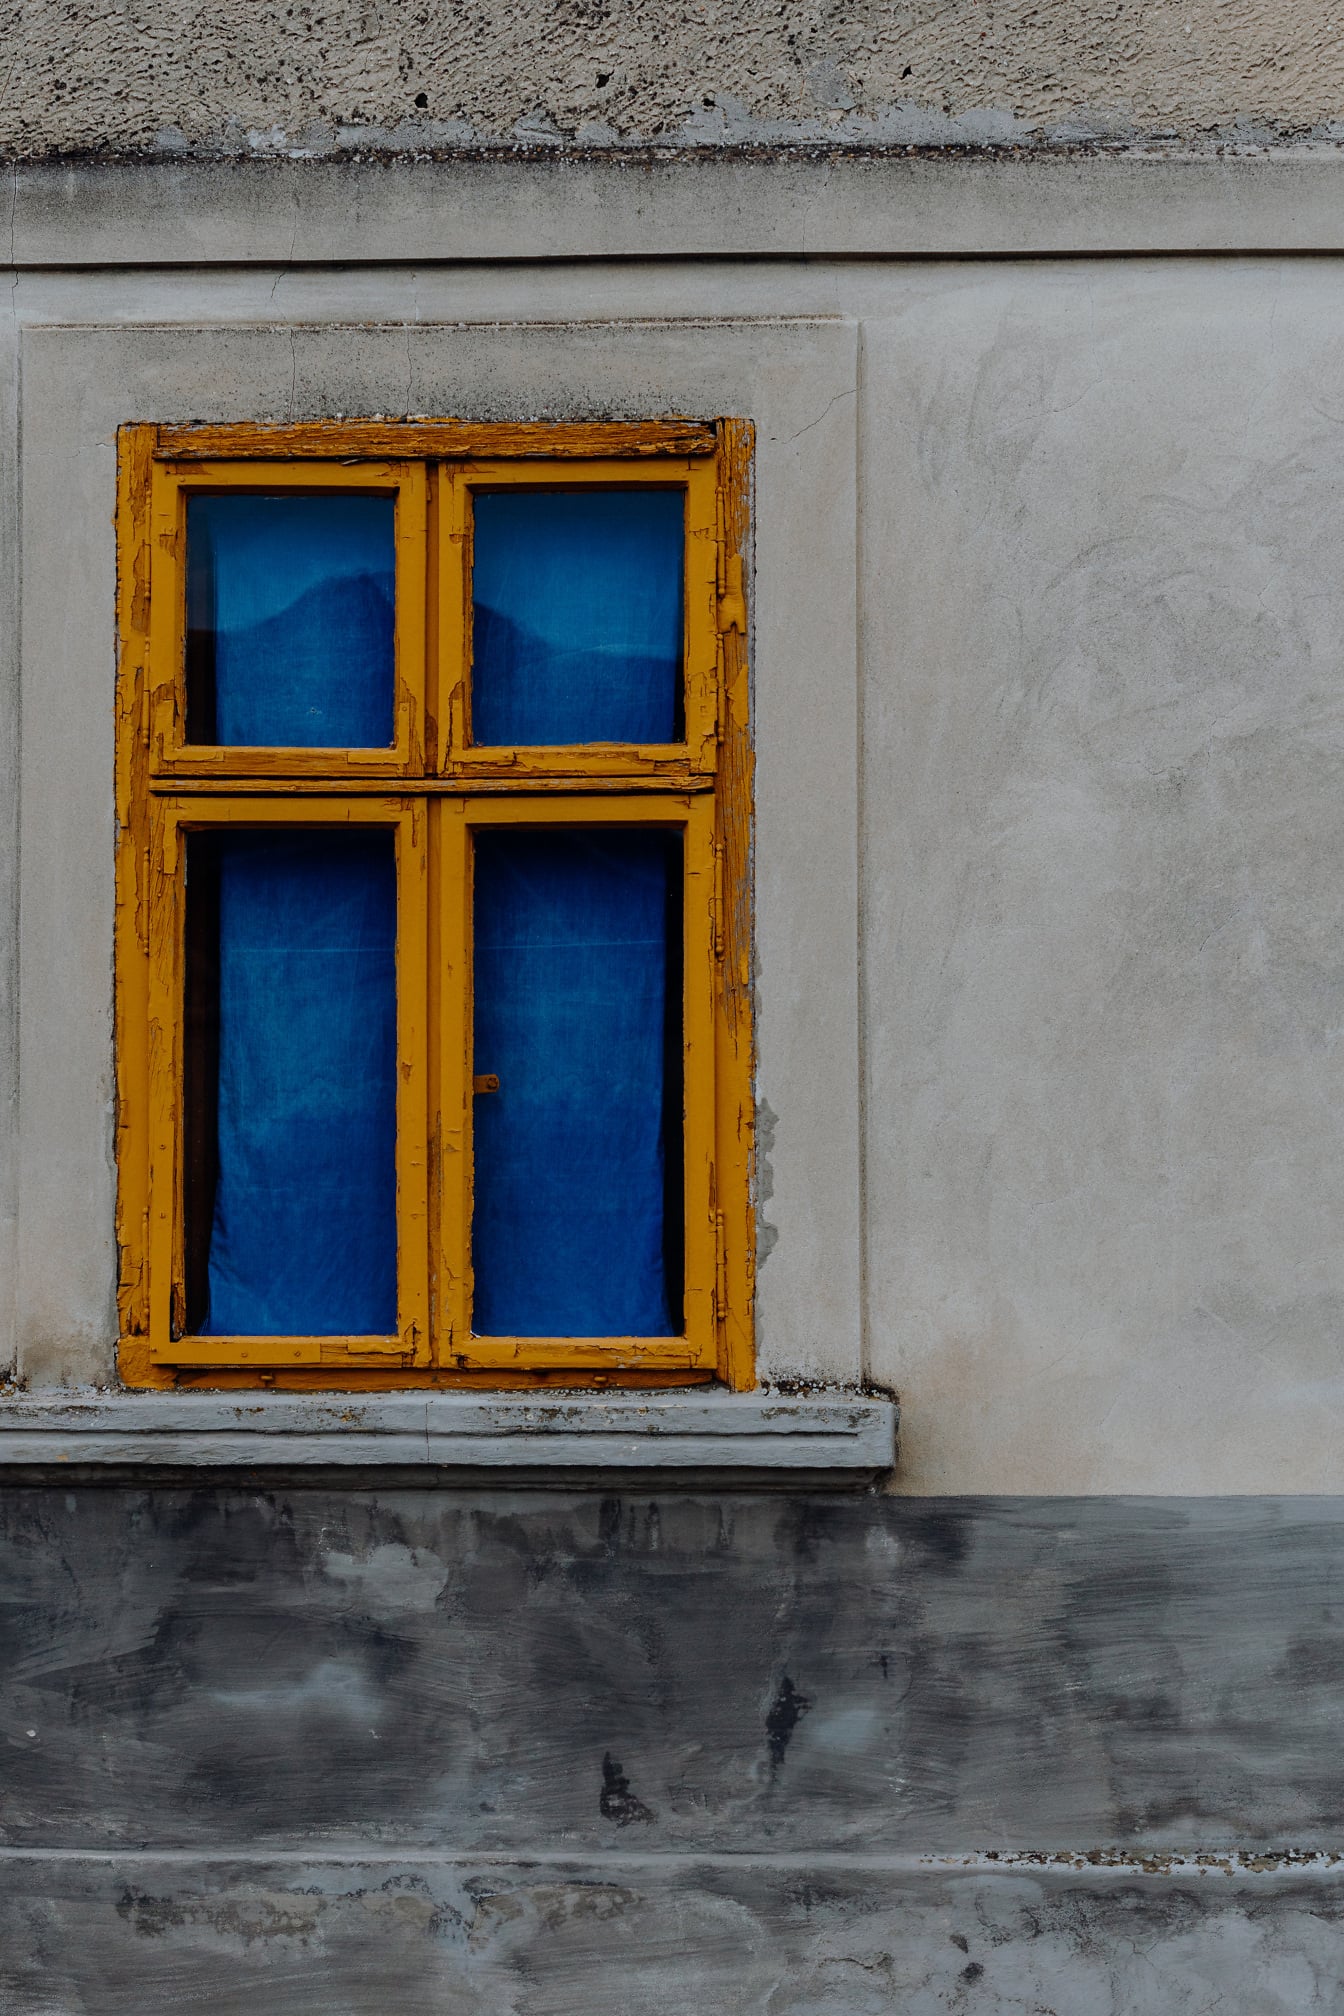 Pintura marrón amarillenta vibrante en ventana antigua con cortina azul oscuro